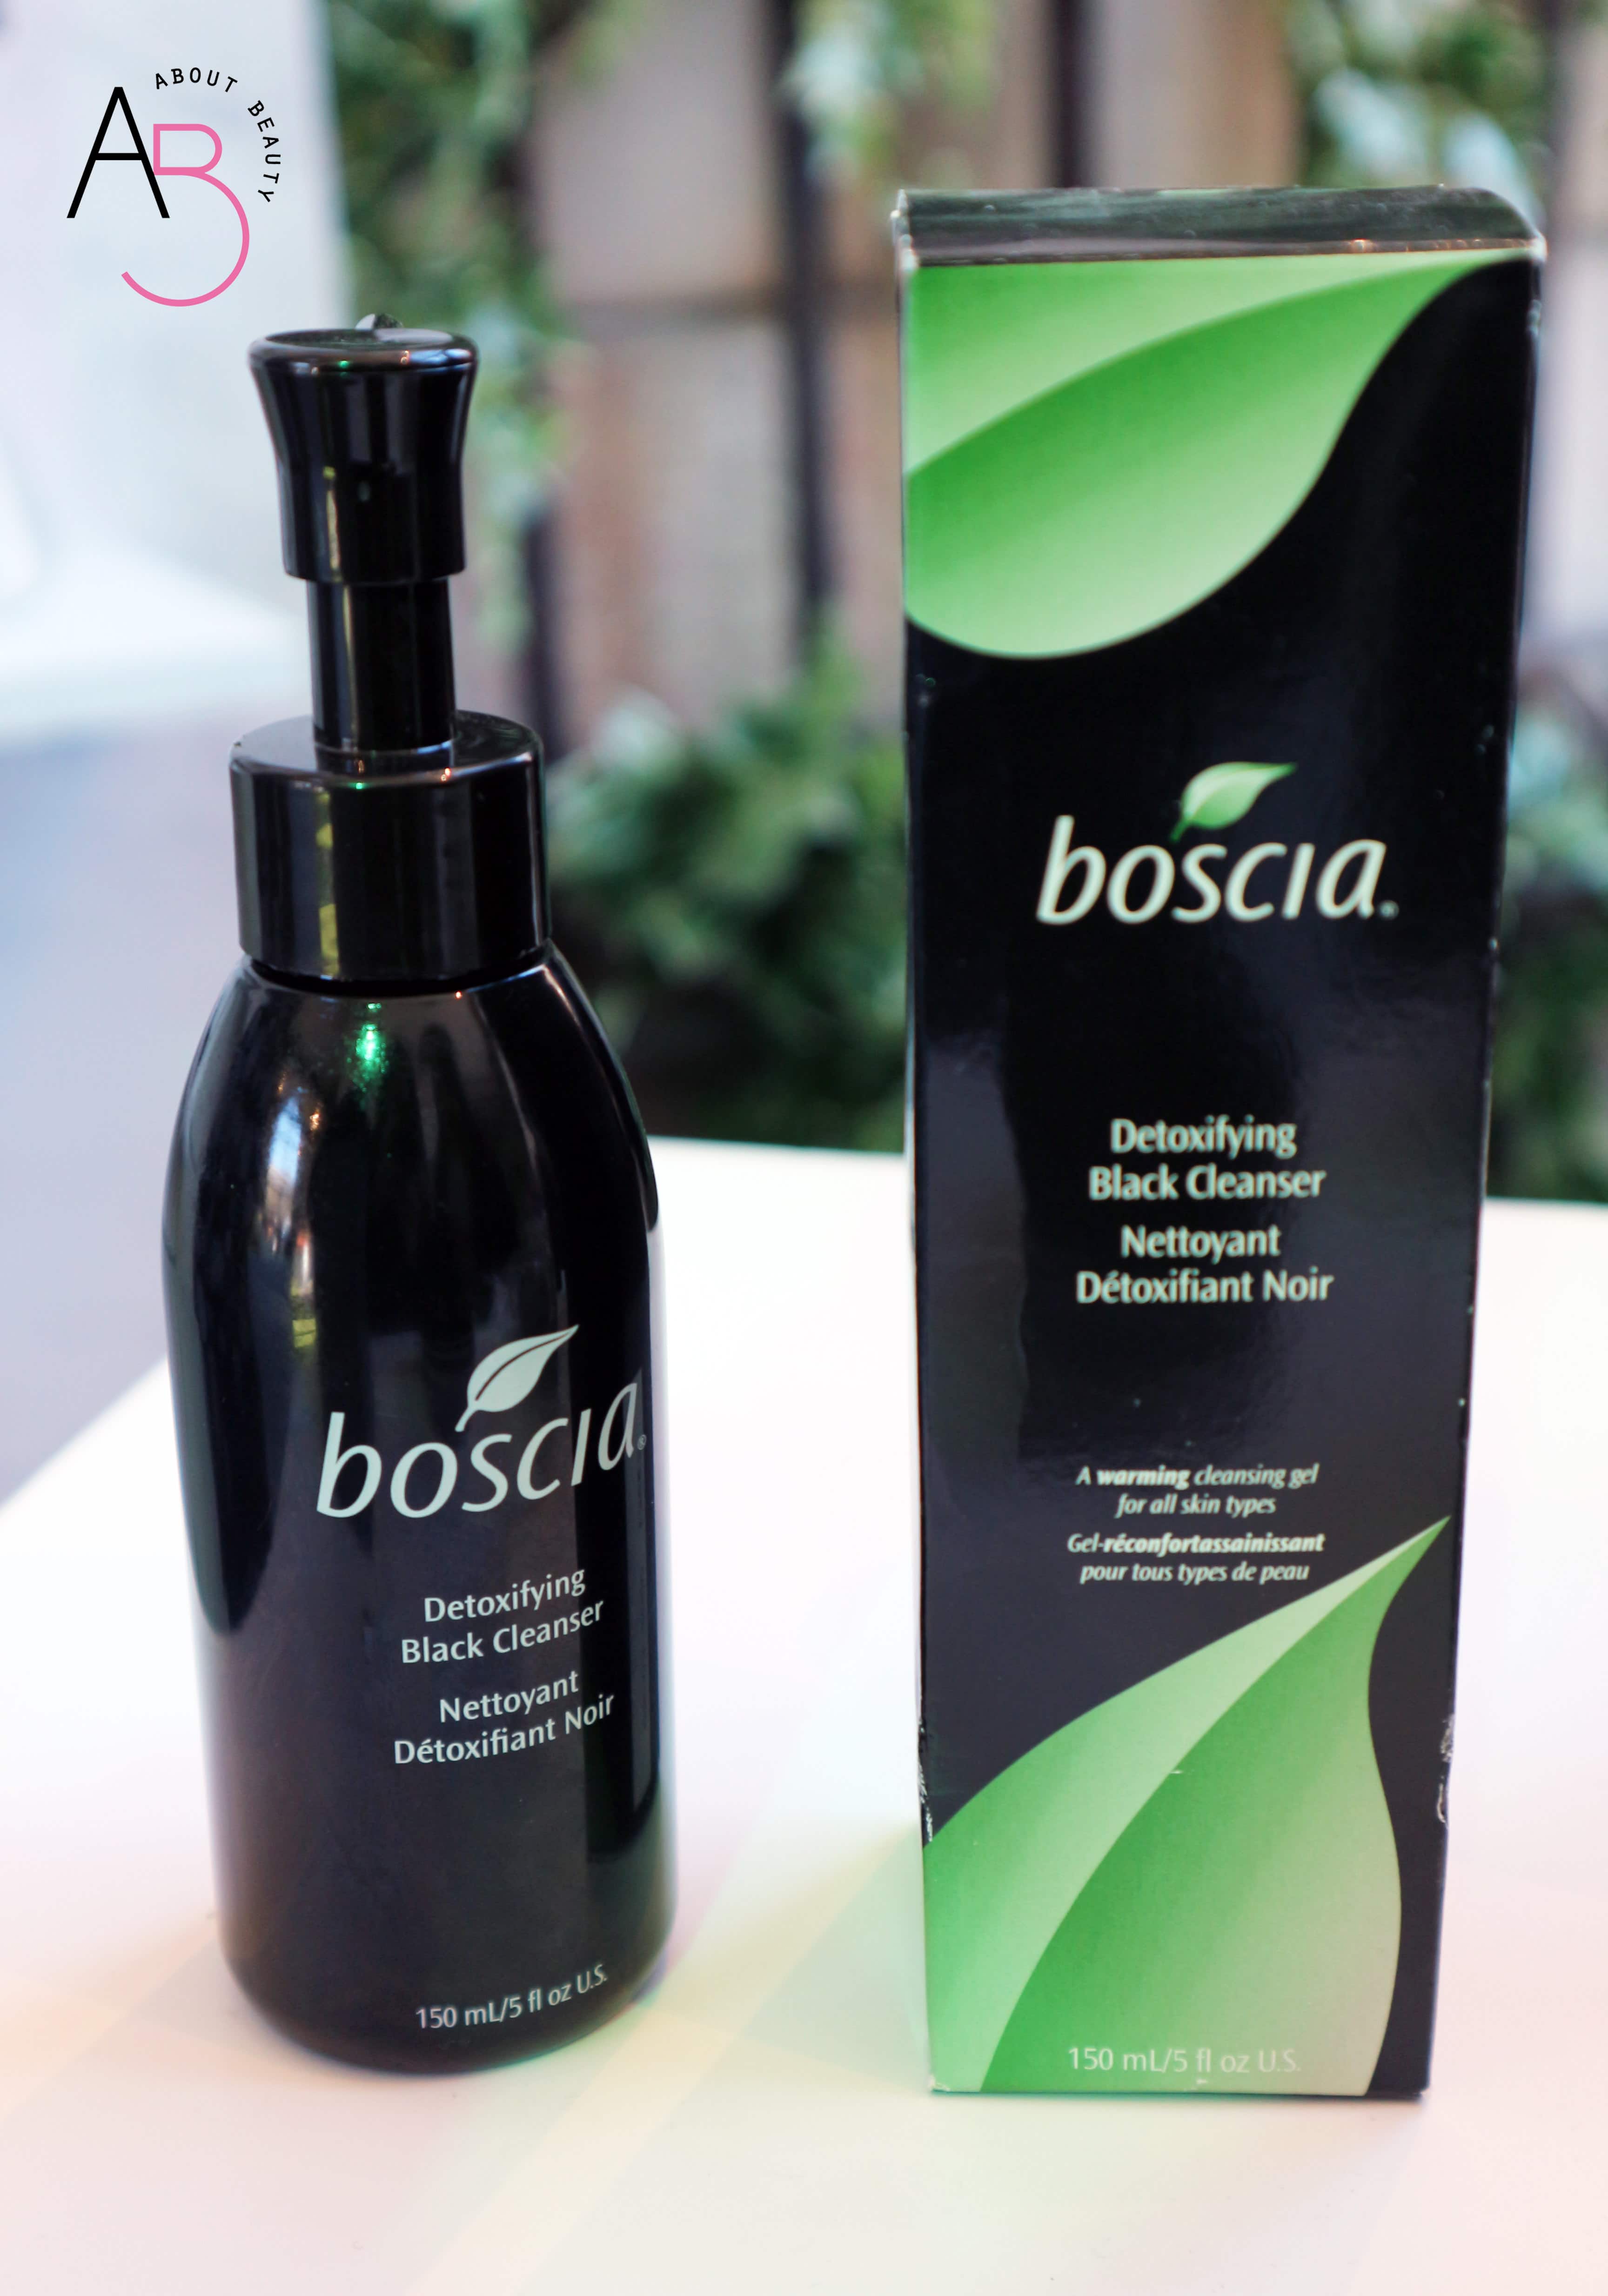 La skincare Boscia arriva in Italia - Info, prezzo, dove acquistare, review, recensione, opinioni - Detoxifying Black Cleanser Detergente Viso